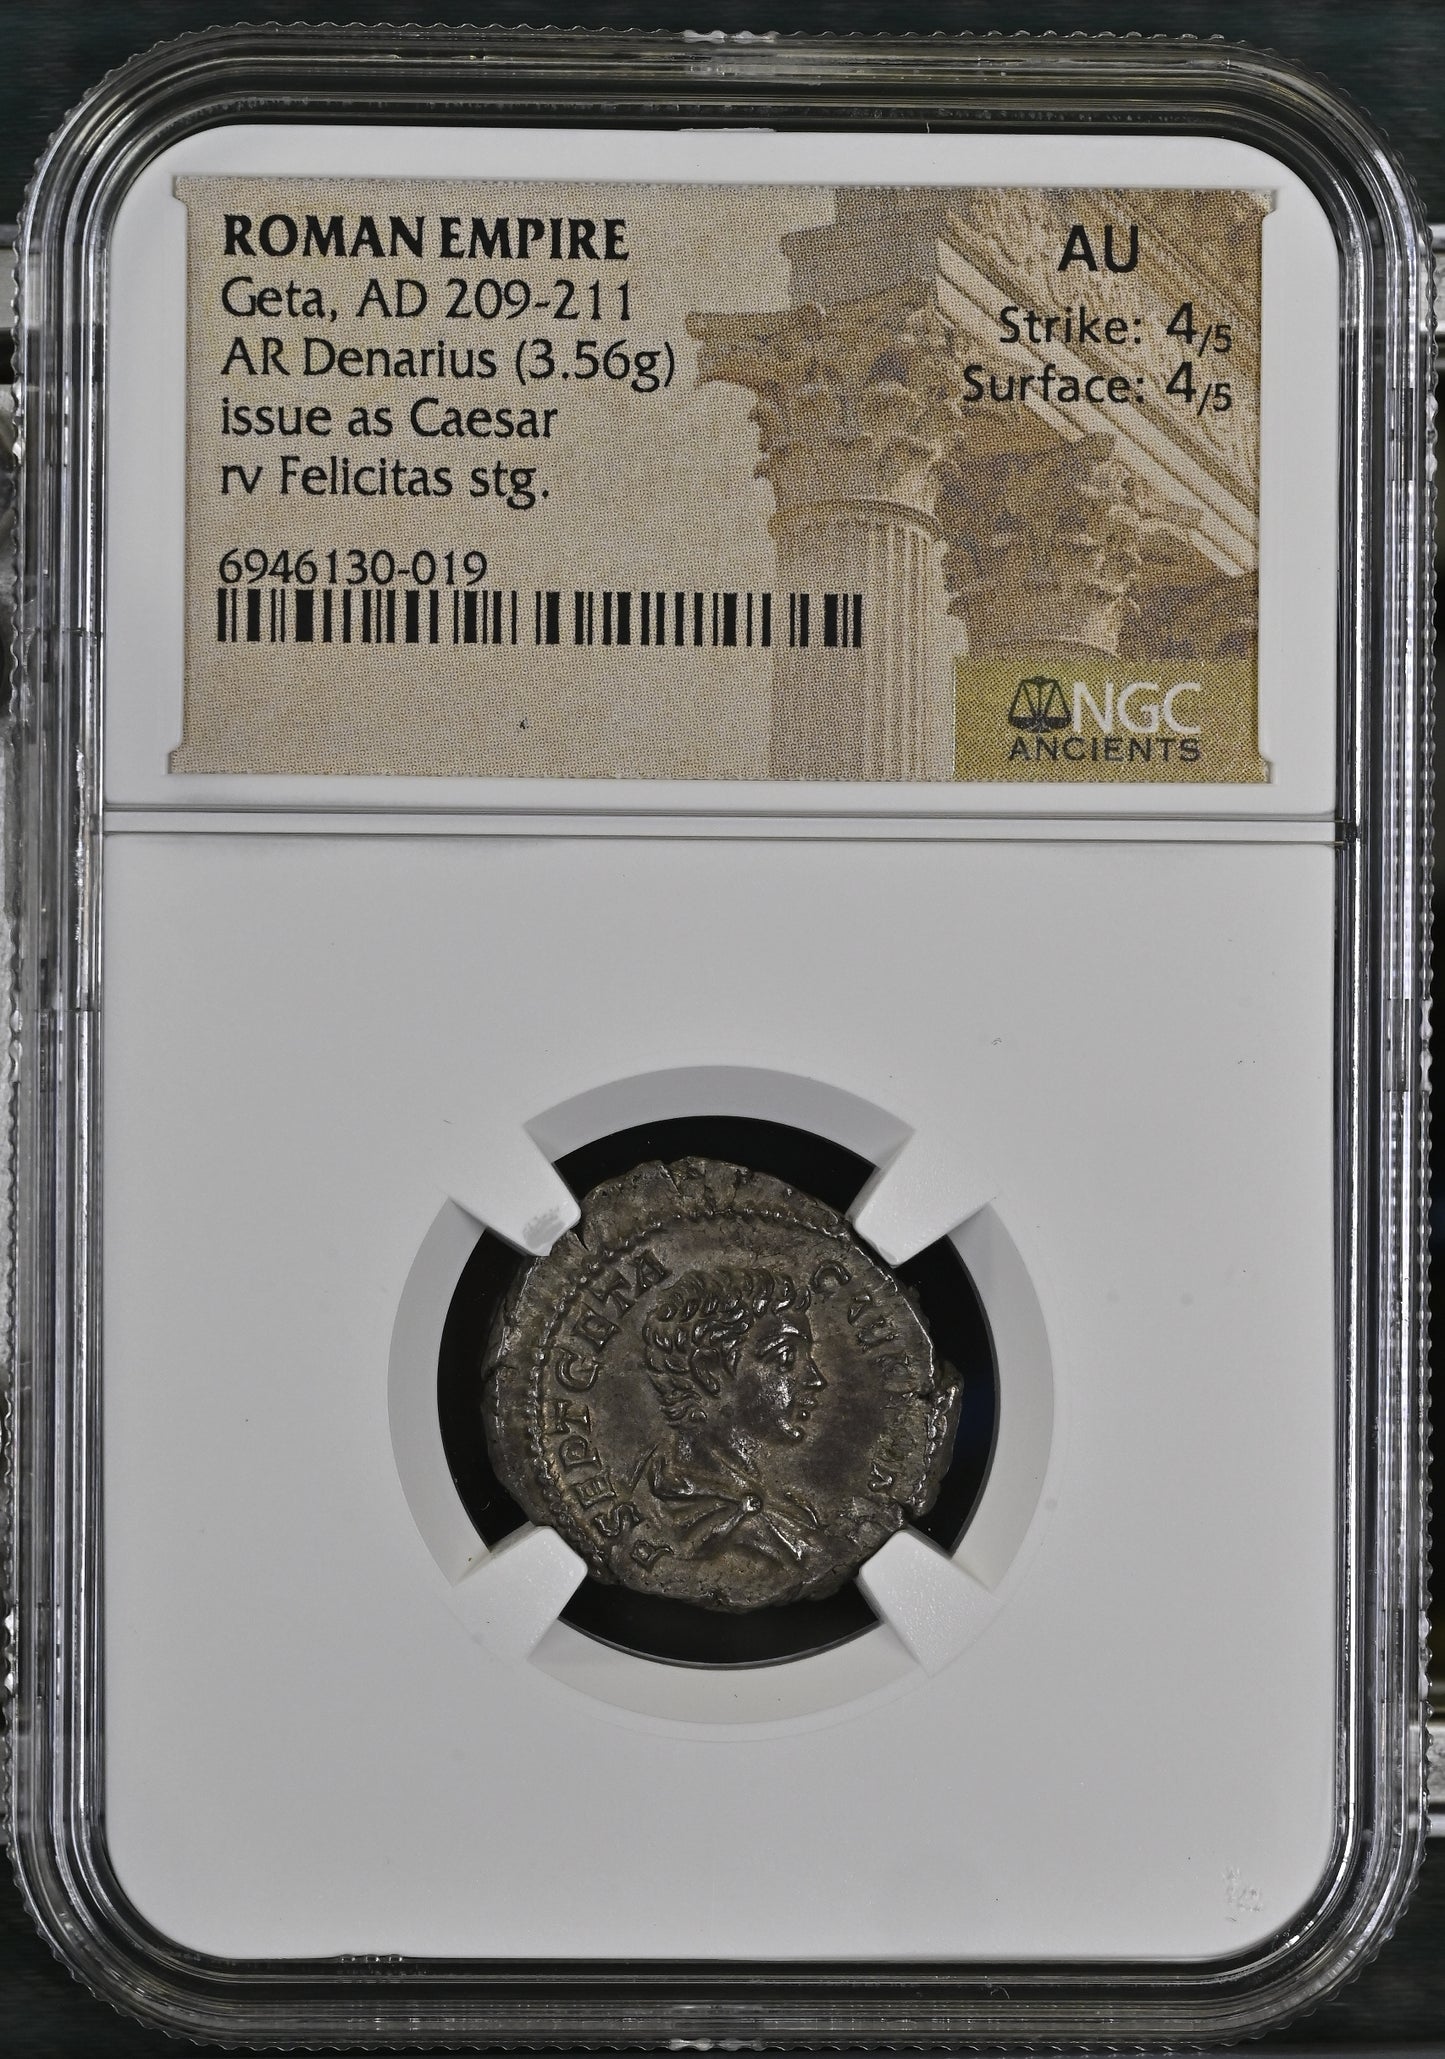 Roman Empire - Geta - Silver Denarius - NGC AU - RIC:9a